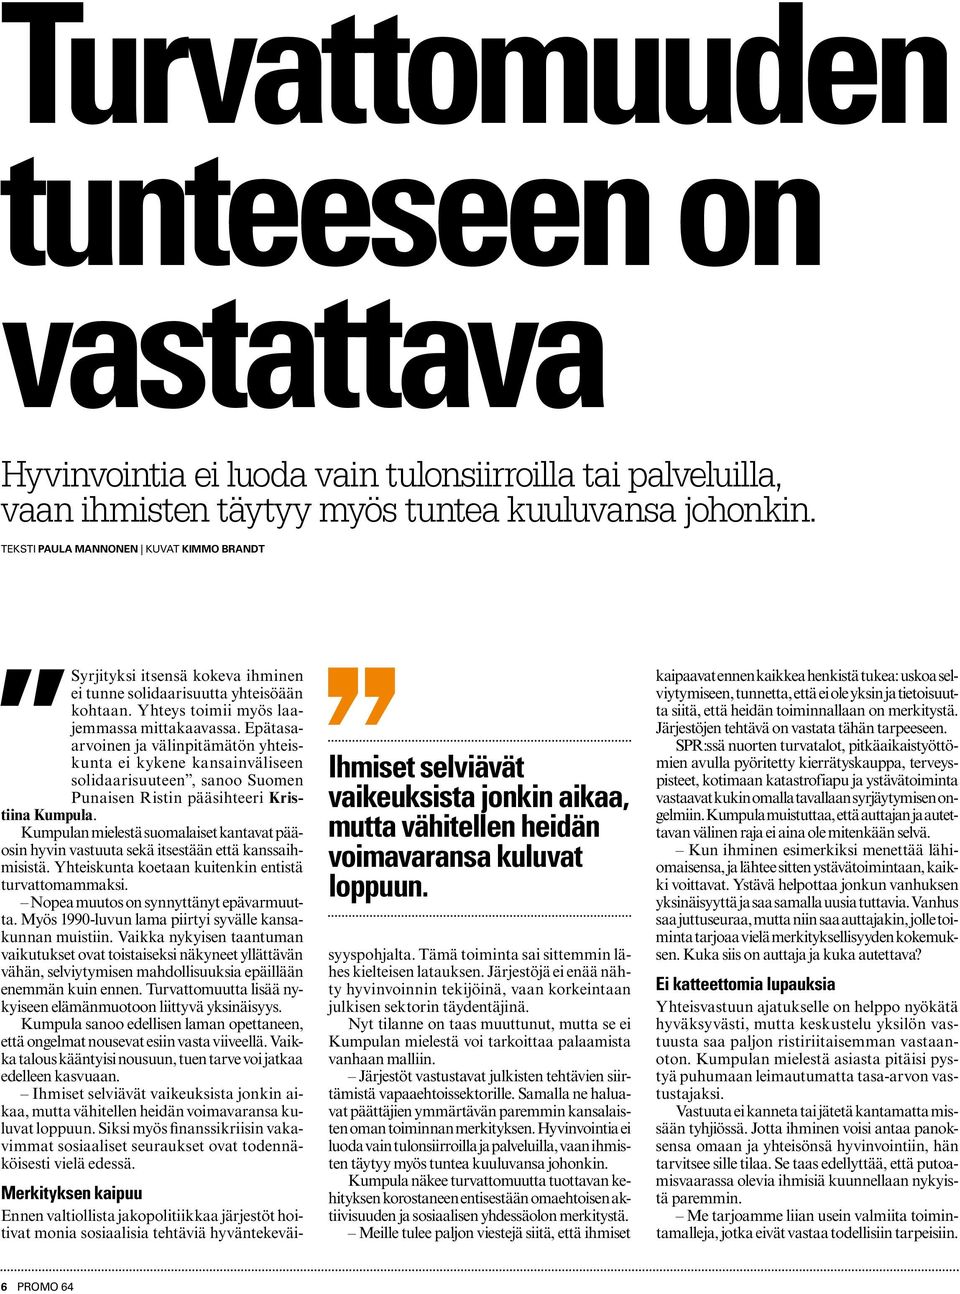 Epätasaarvoinen ja välinpitämätön yhteiskunta ei kykene kansainväliseen solidaarisuuteen, sanoo Suomen Punaisen Ristin pääsihteeri Kristiina Kumpula.